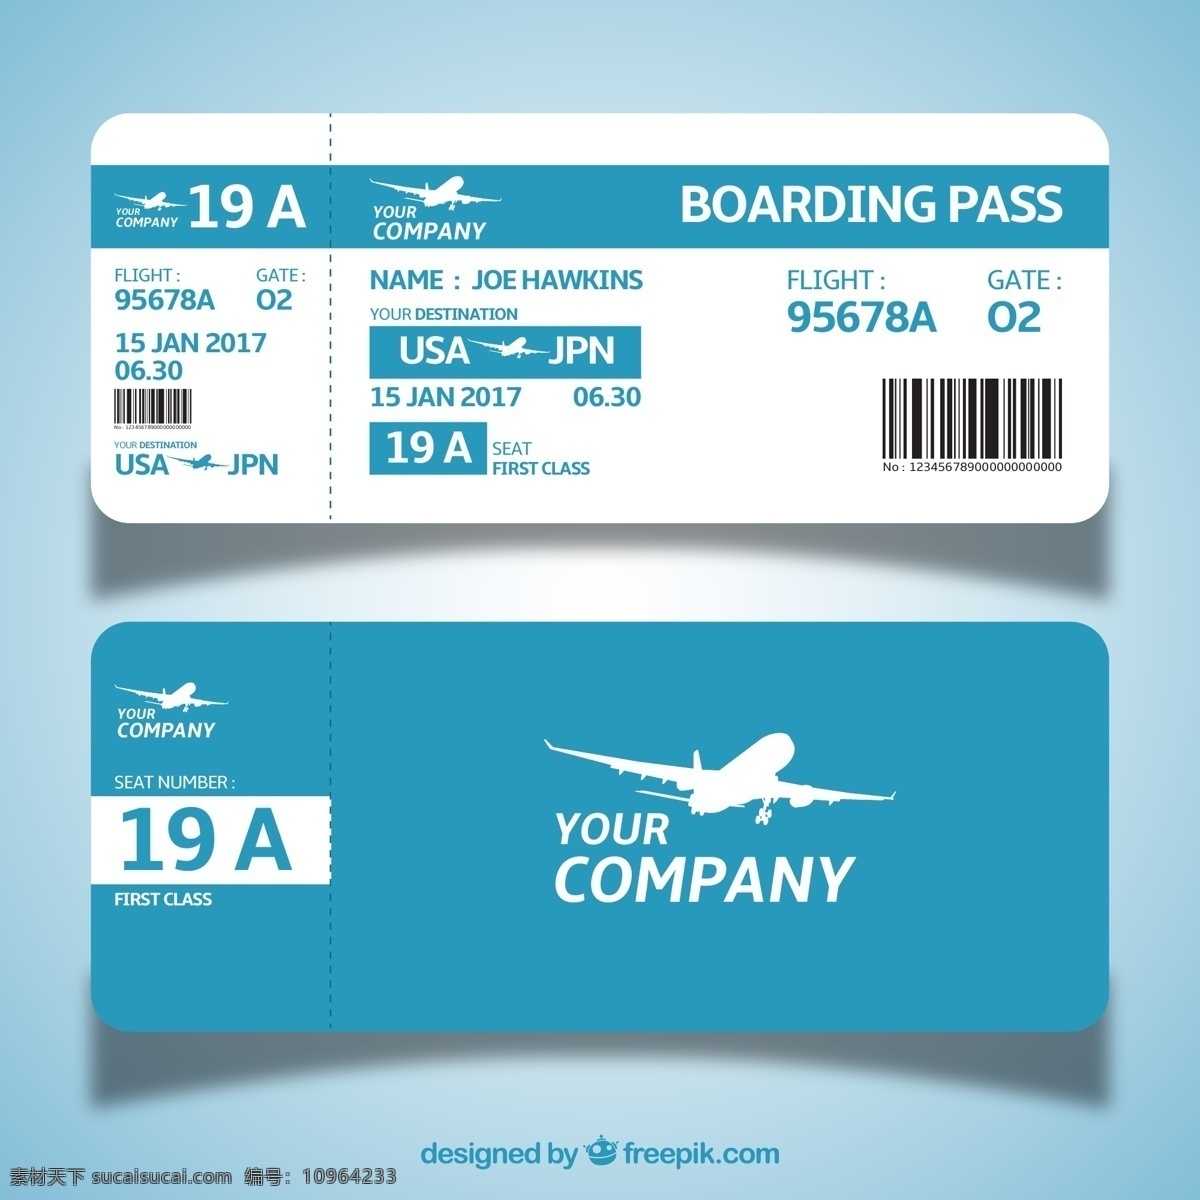 蓝色 登机牌 正反面 飞机 航班 条形码 日期 时间 姓名 班次 包装设计